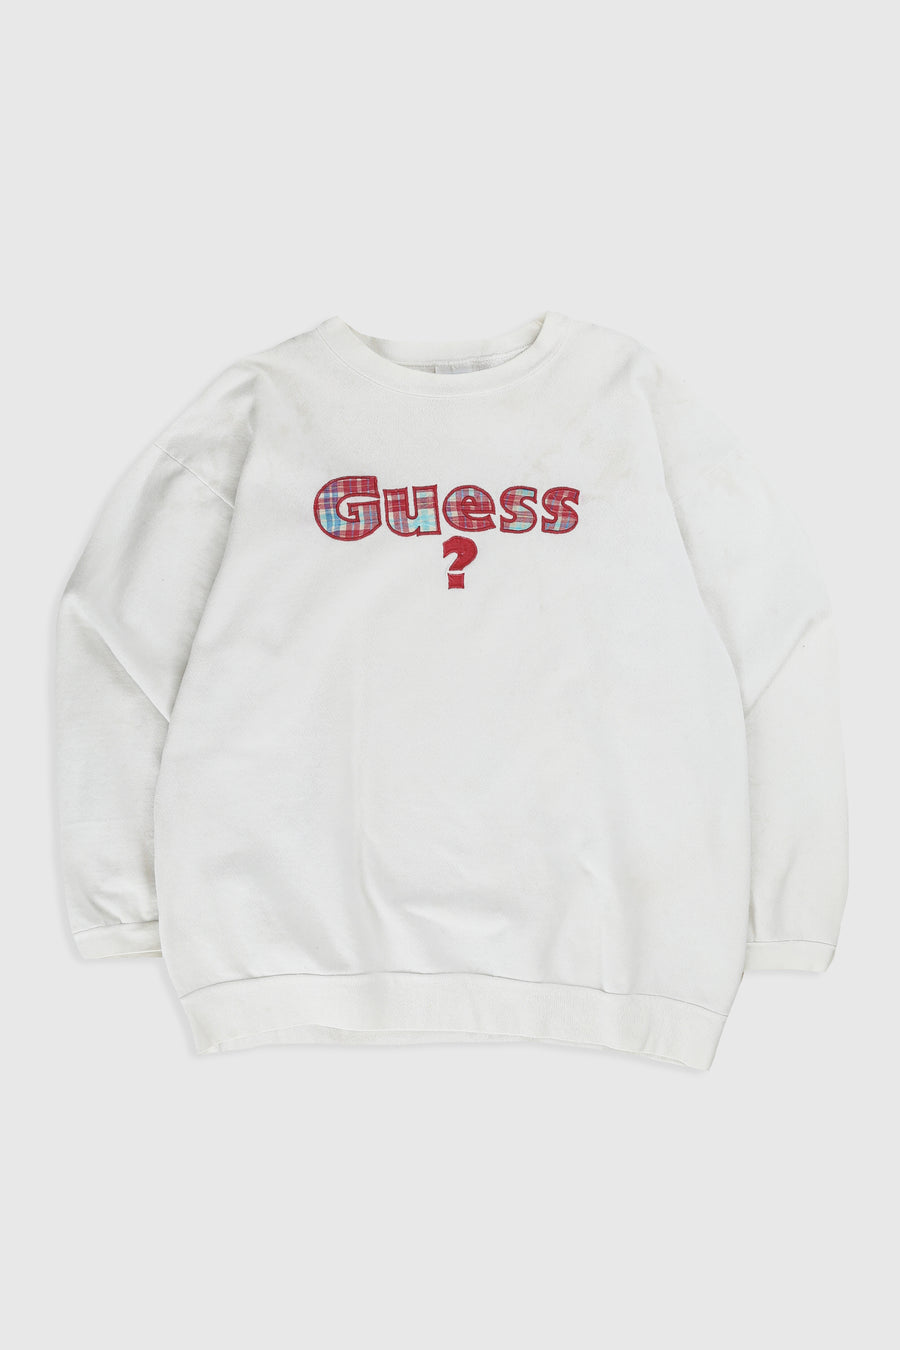 Vintage Guess Sweatshirt